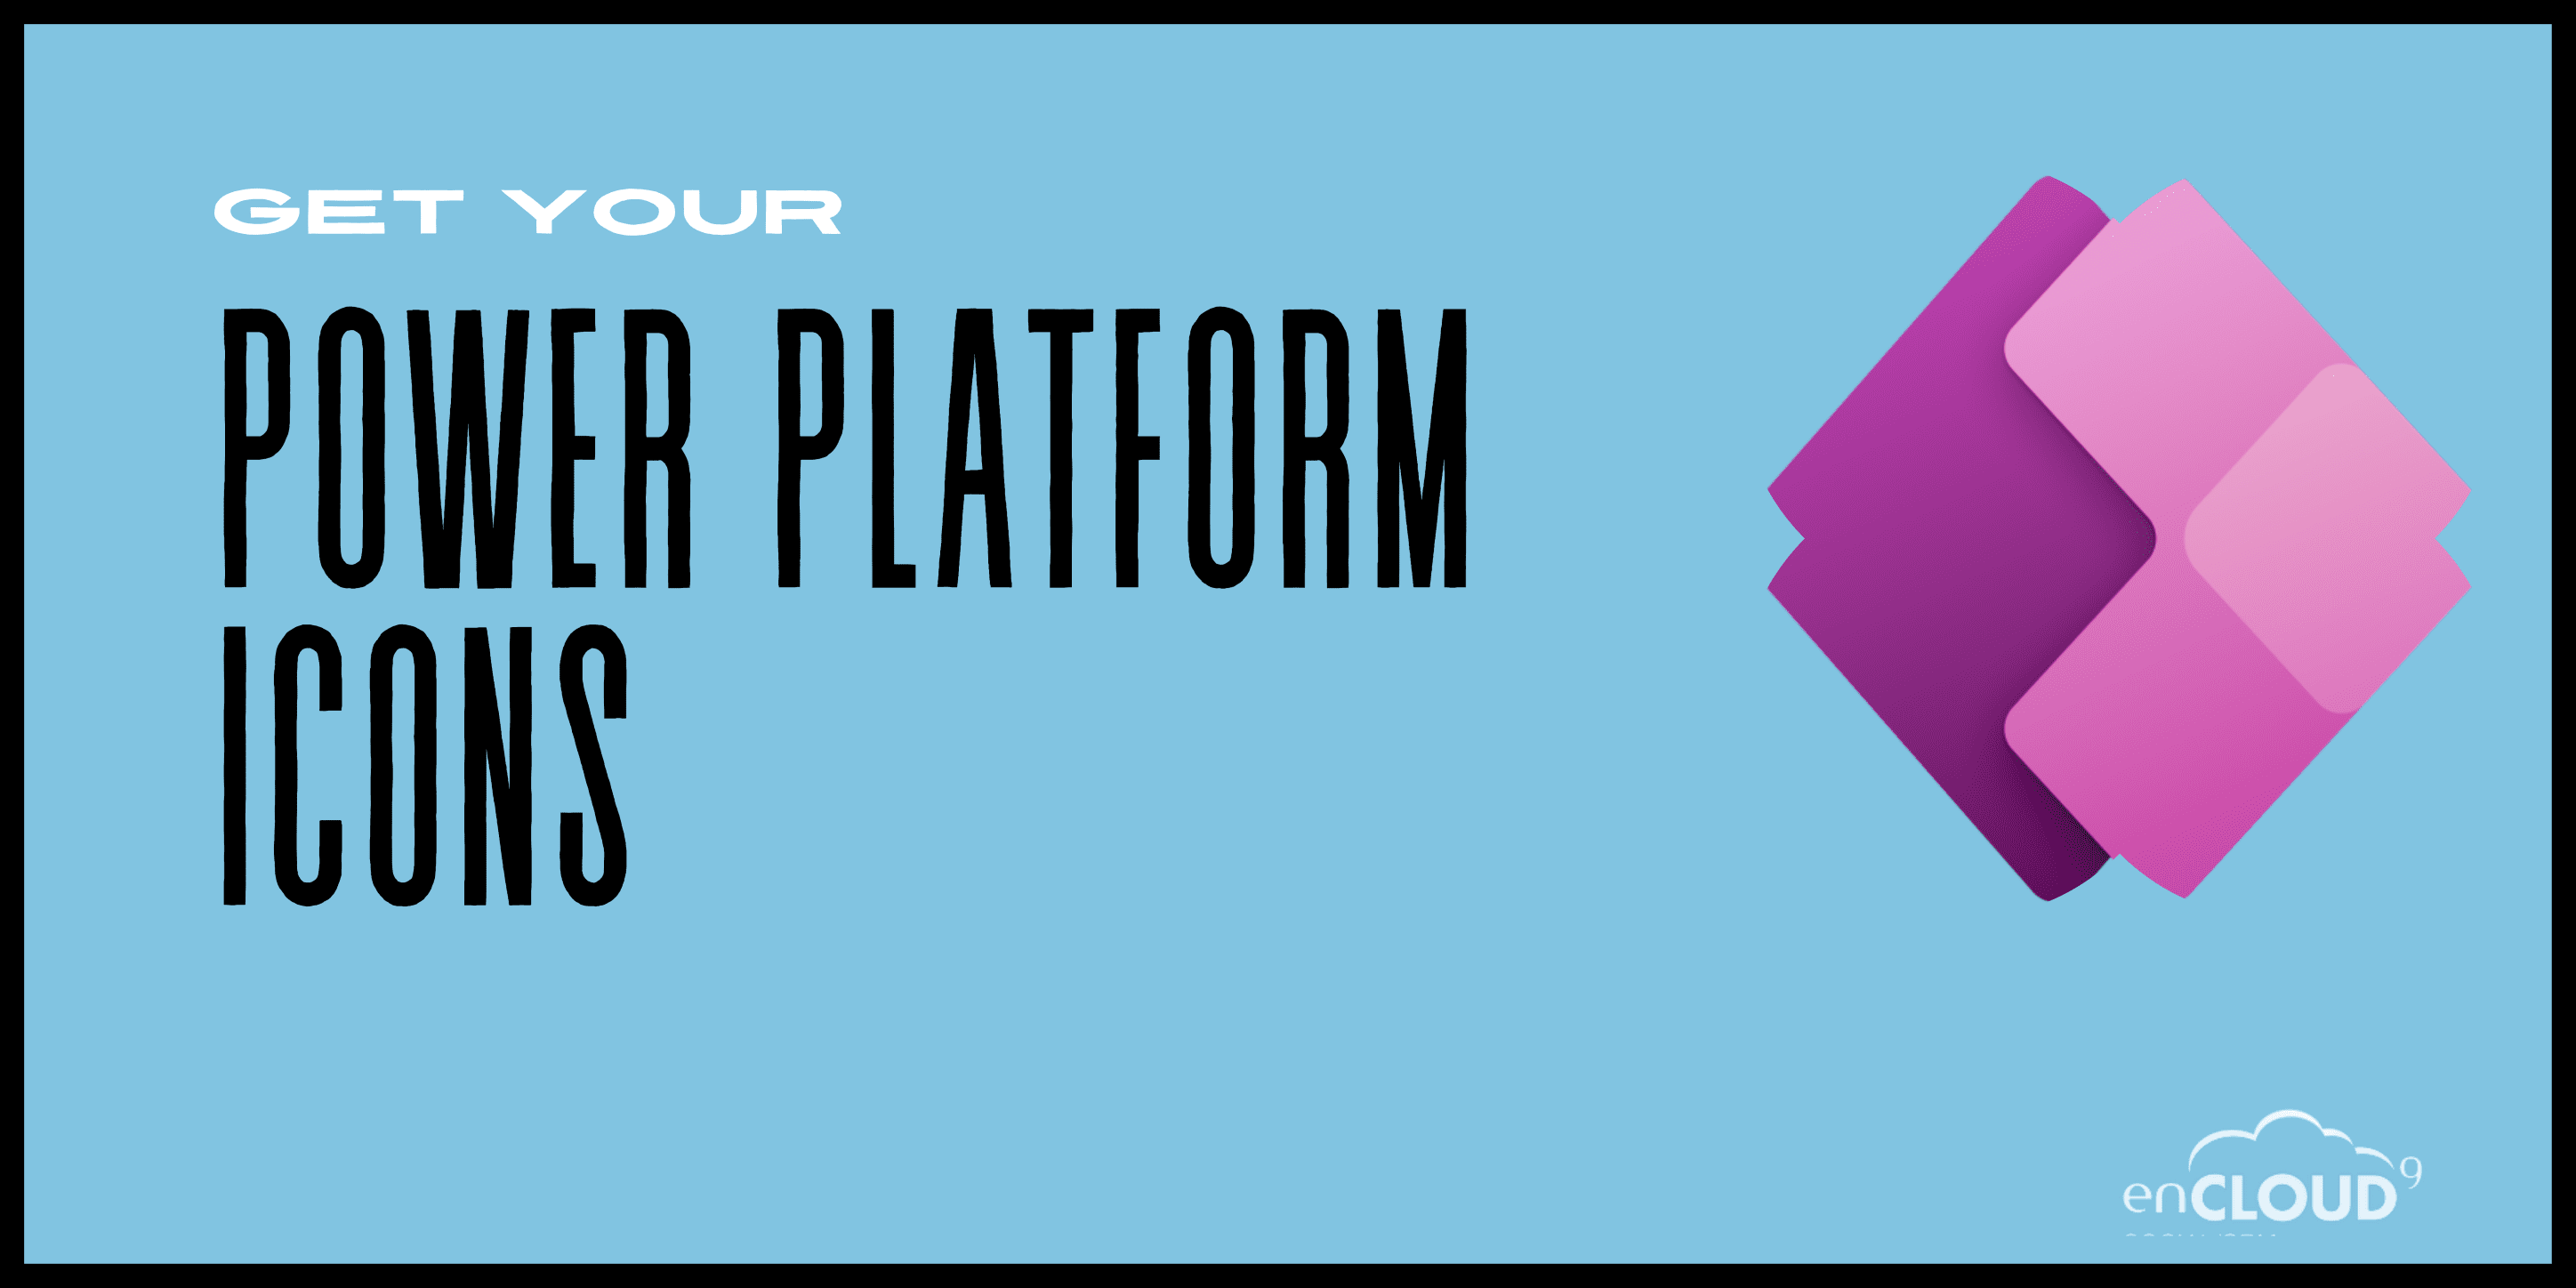 Power Platform icons | enCloud9